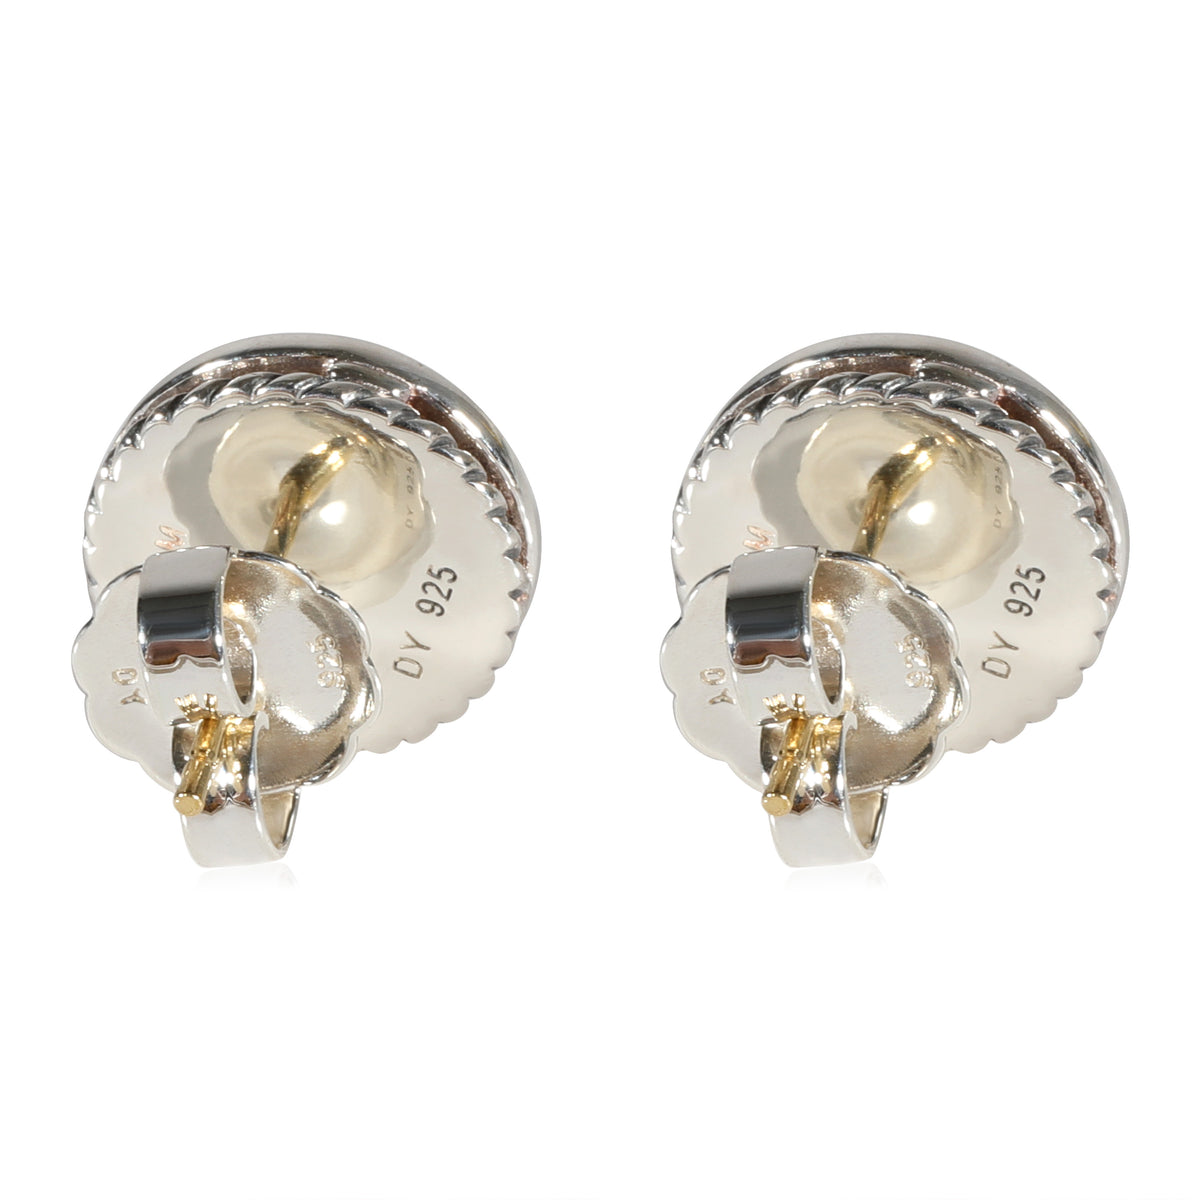 David Yurman Cerise Pearl Diamond Earrings in Sterling Silver 0.29 CTW